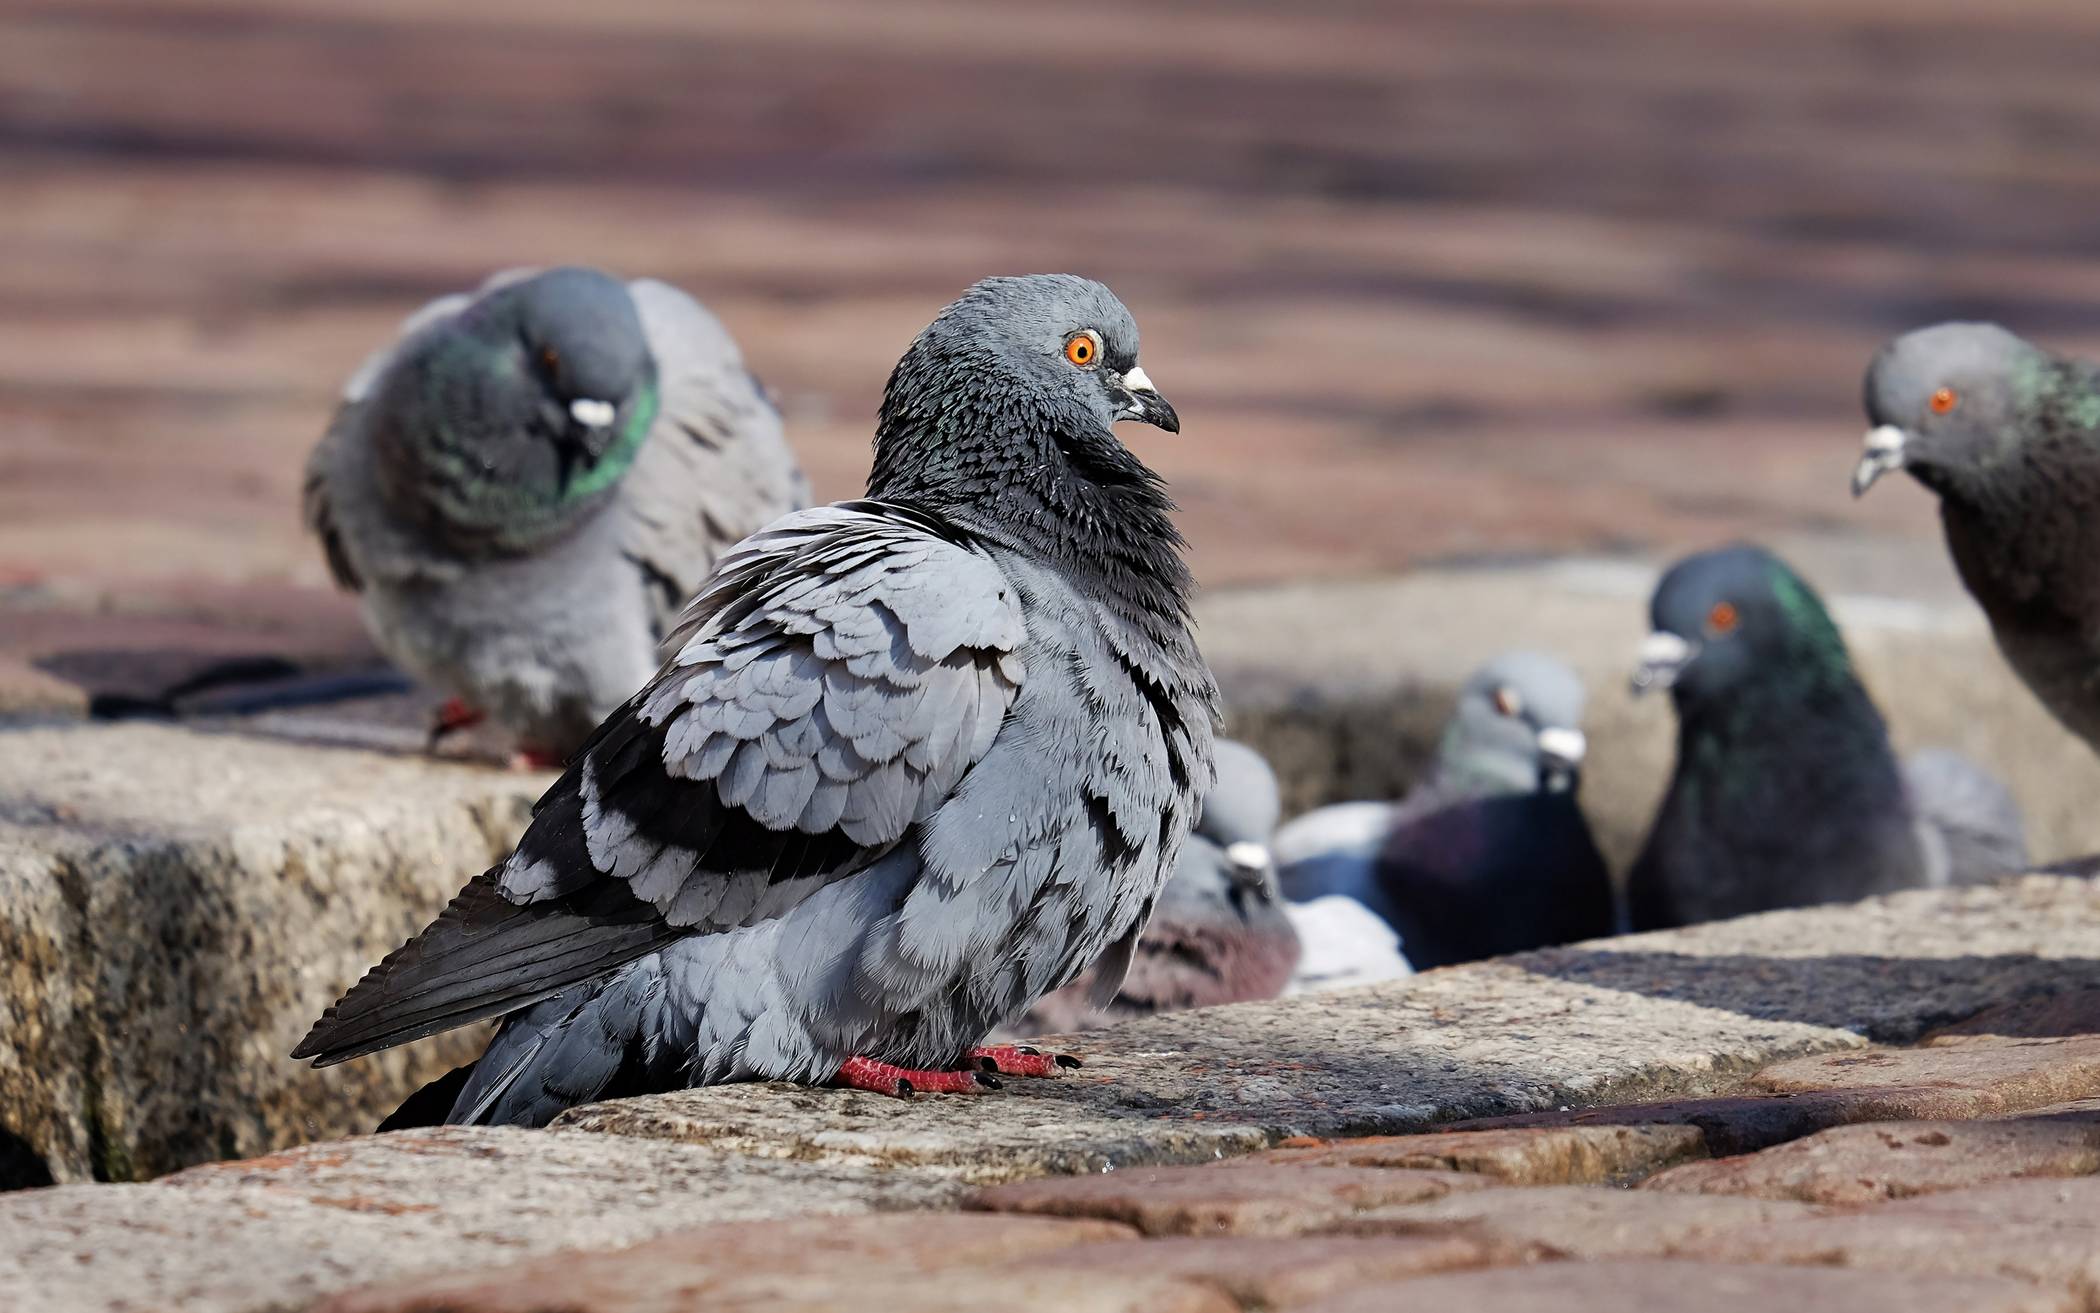  Tauben sind in der der Mettmanner Innenstadt zur Plage geworden. Dies liegt daran, dass sie immer noch gefüttert werden. 